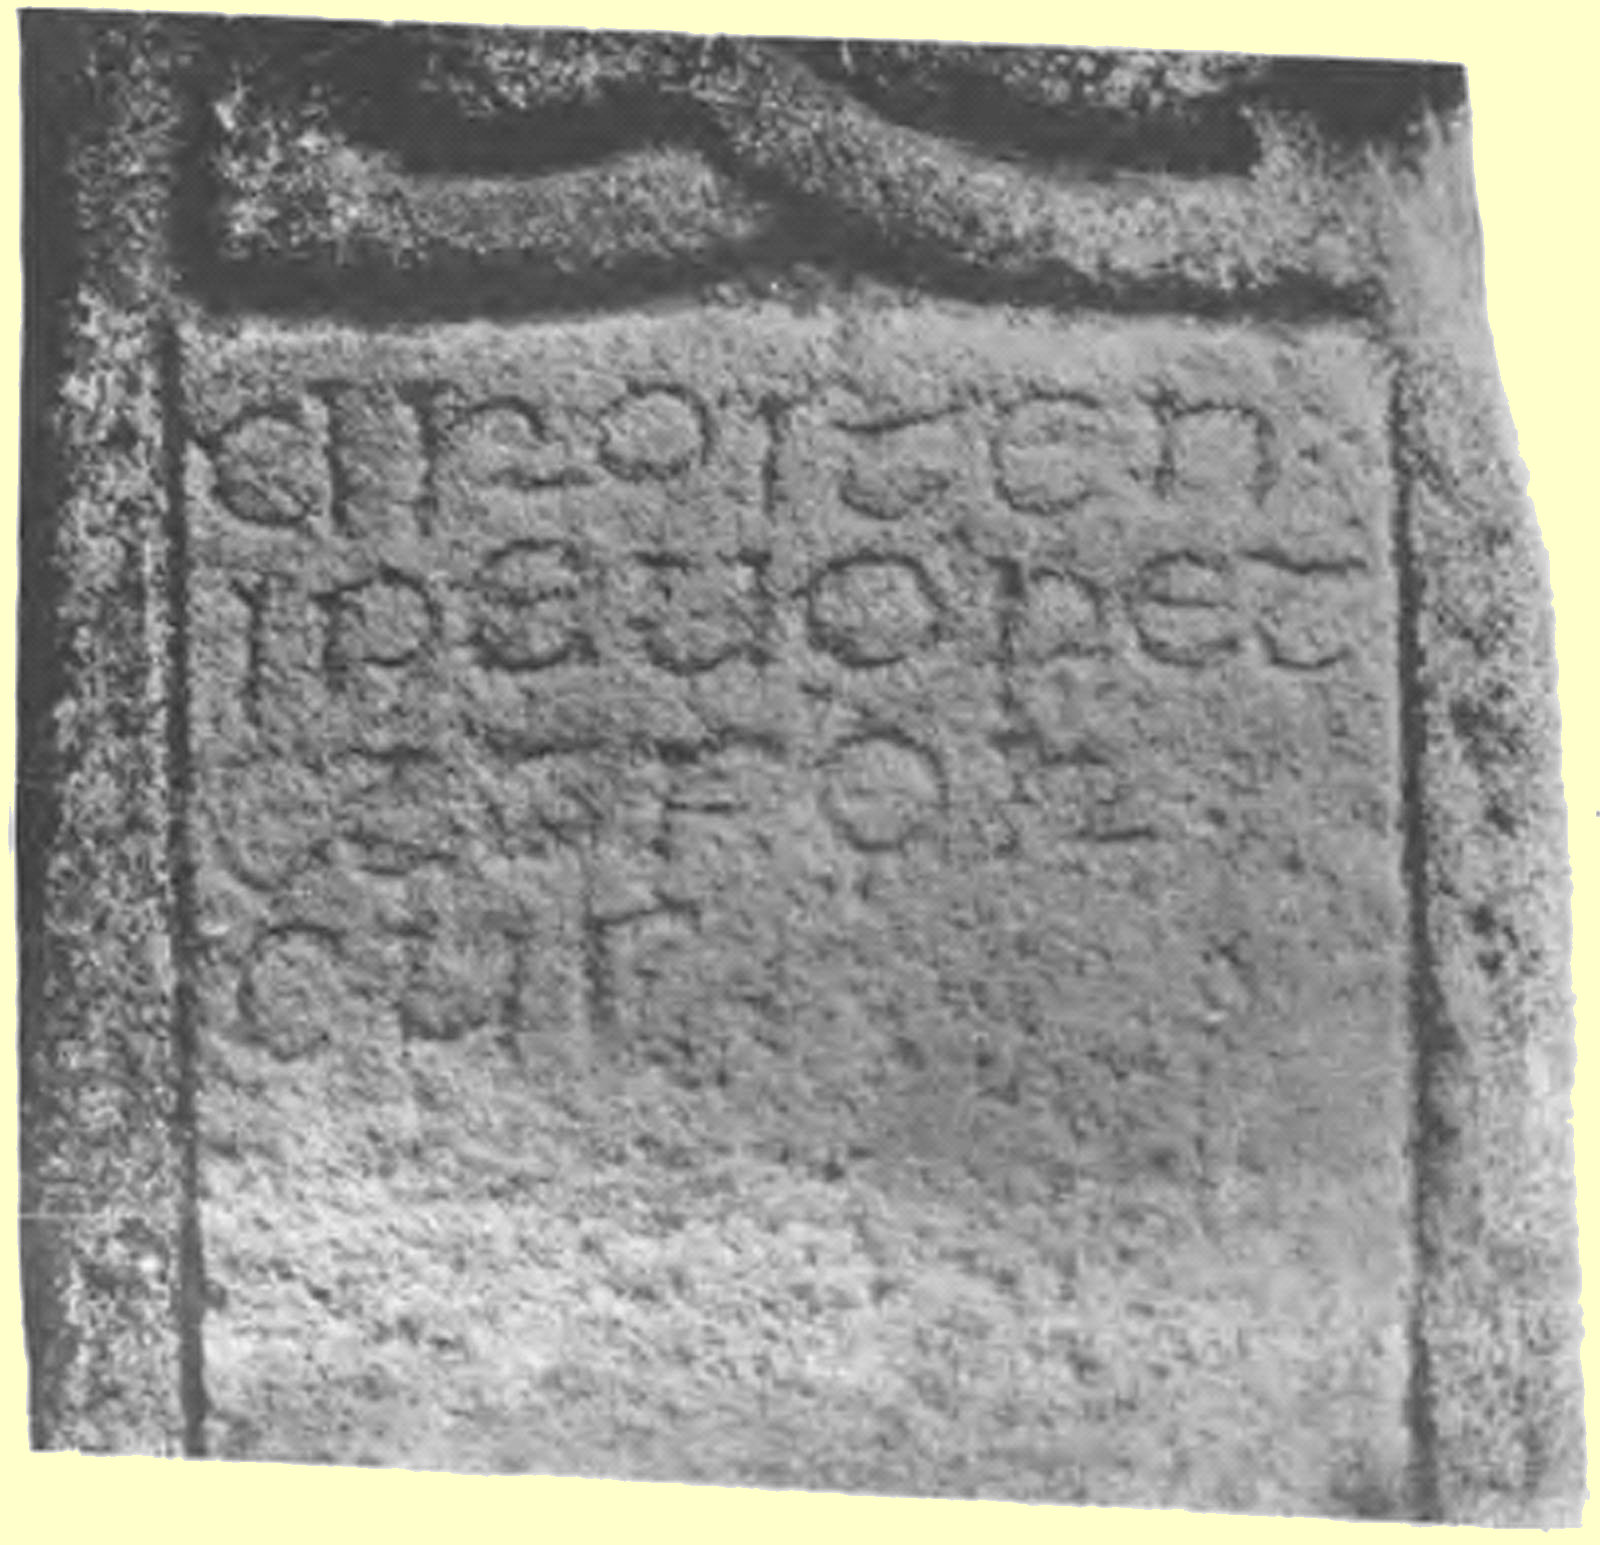 Der „Drosten„-Stein, Inschrift: „DROSTEN: IPEUORET ETTFOR CUS”, „Drosten (ein früherer König der Pikten), bitte für uns”, in der St-Vigeans-Kirche in Arbroath